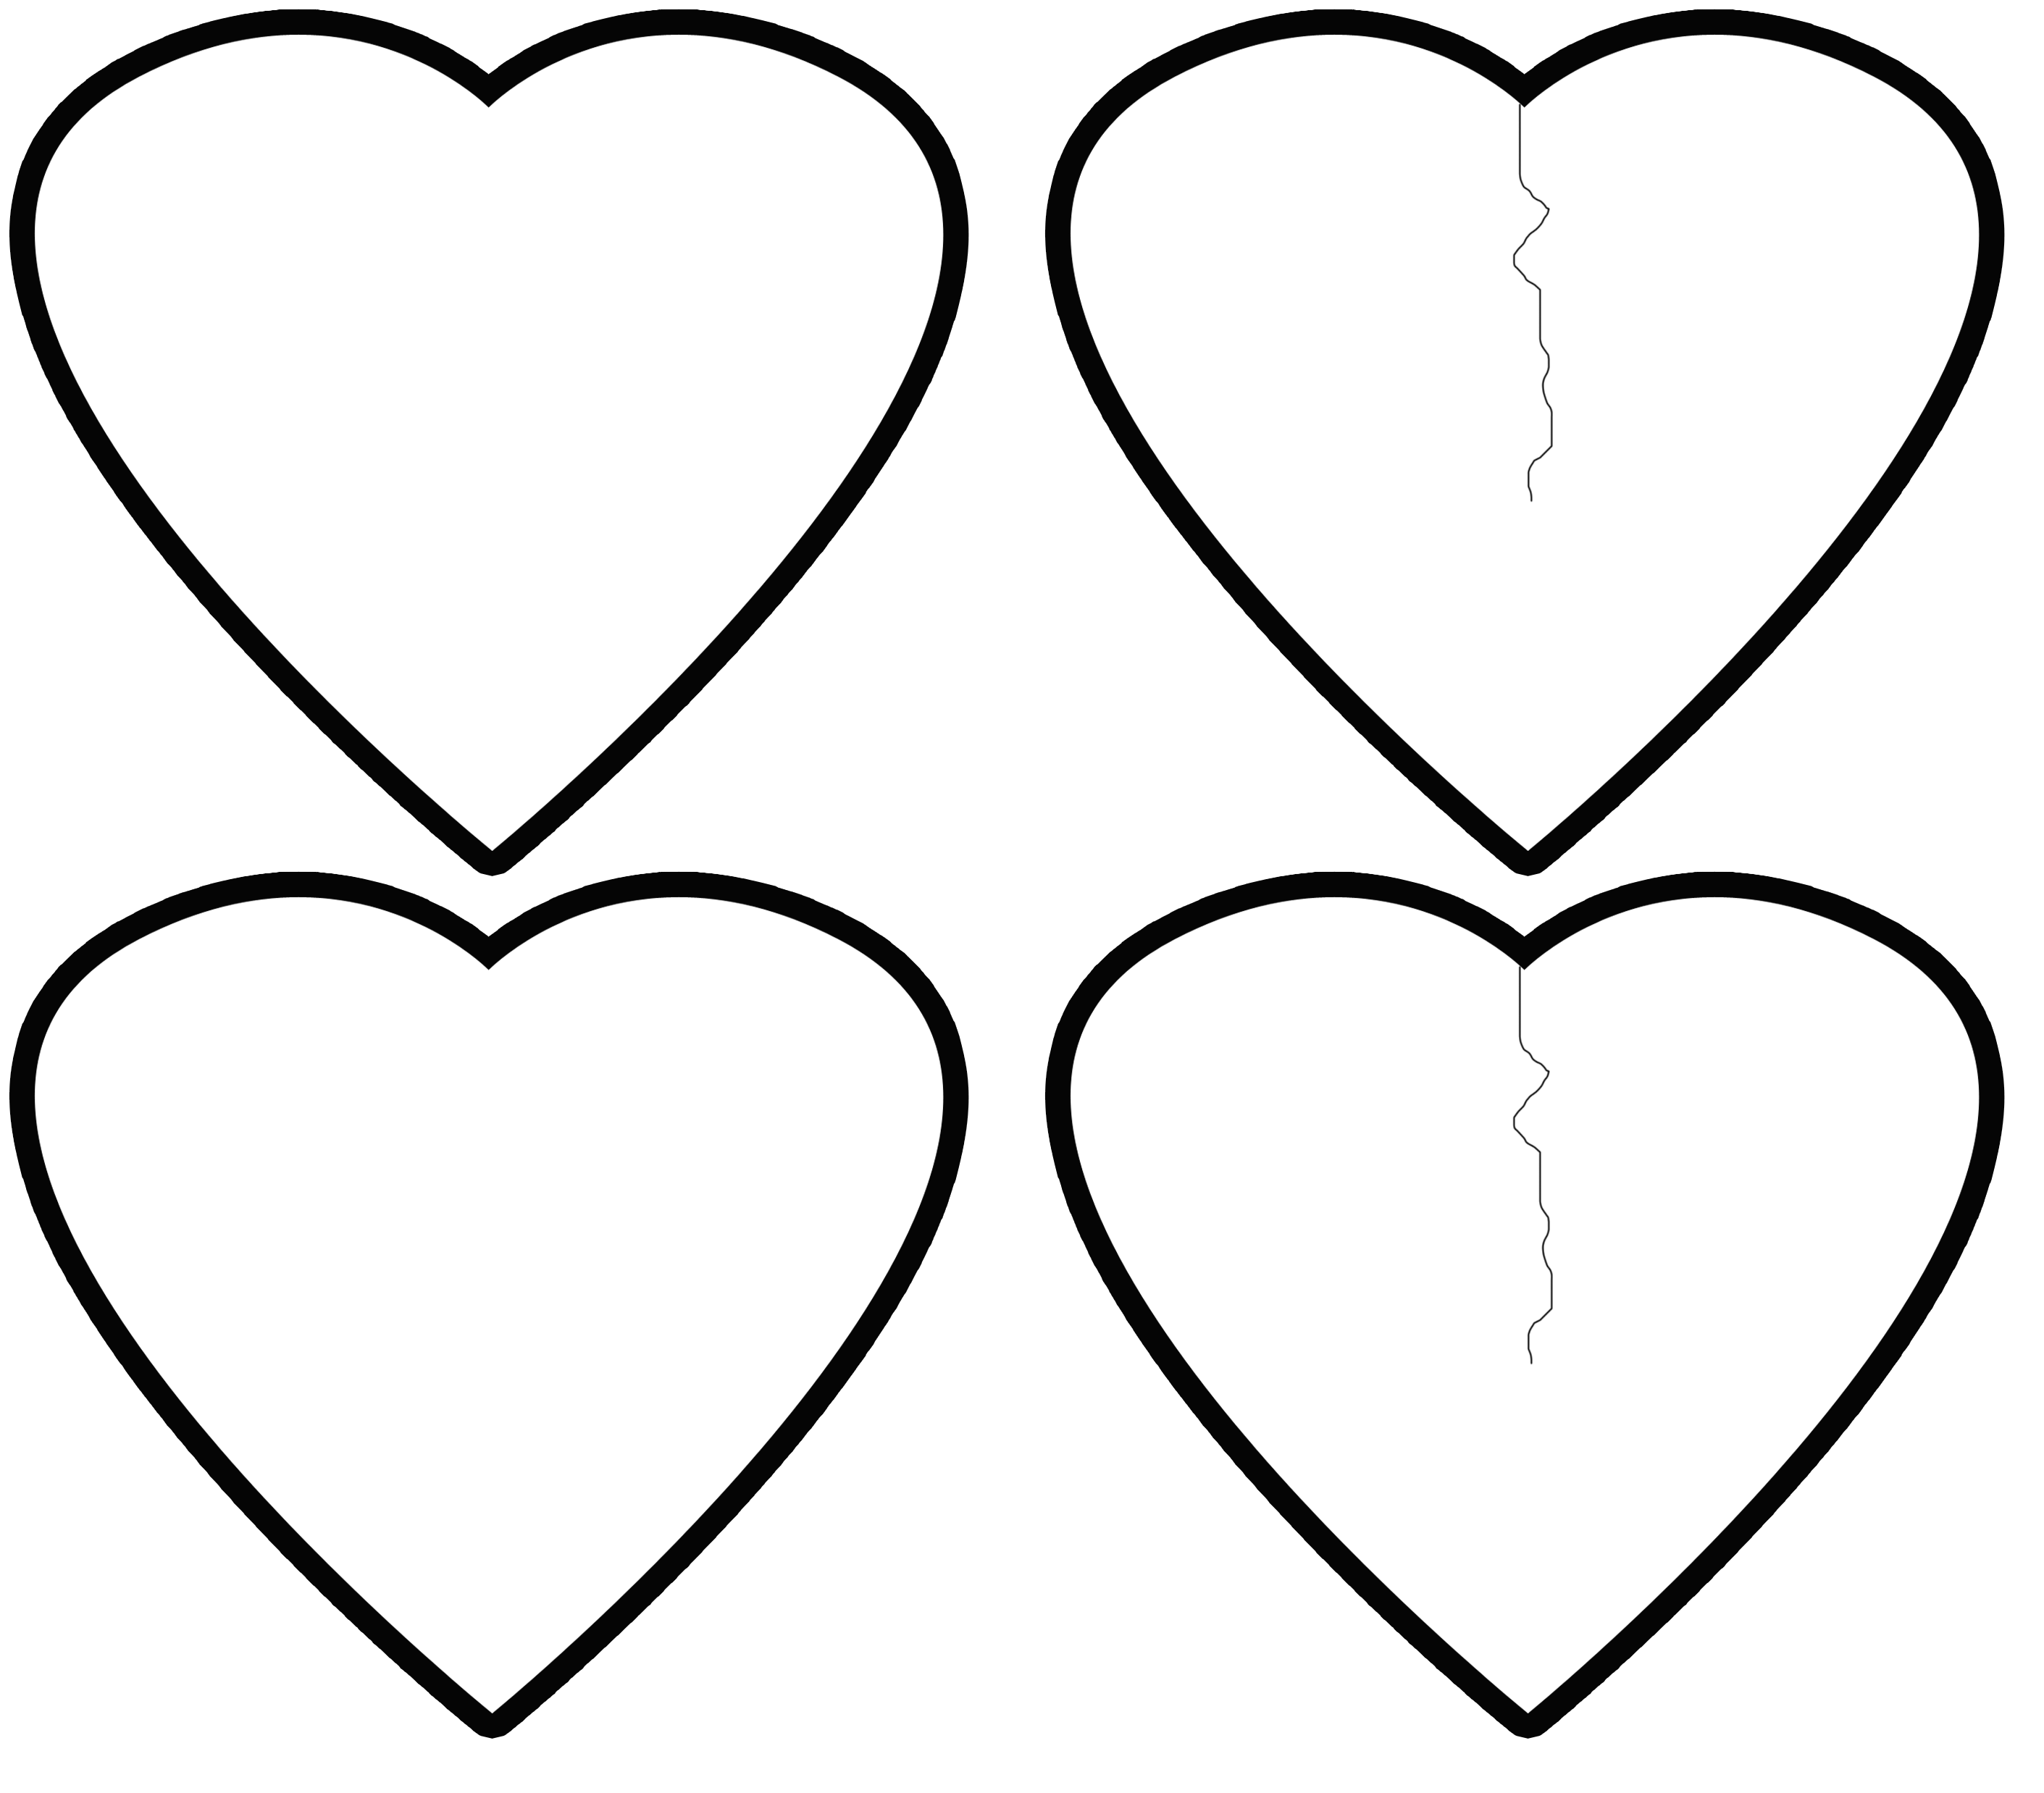 Трафарет сердца для вырезания из бумаги